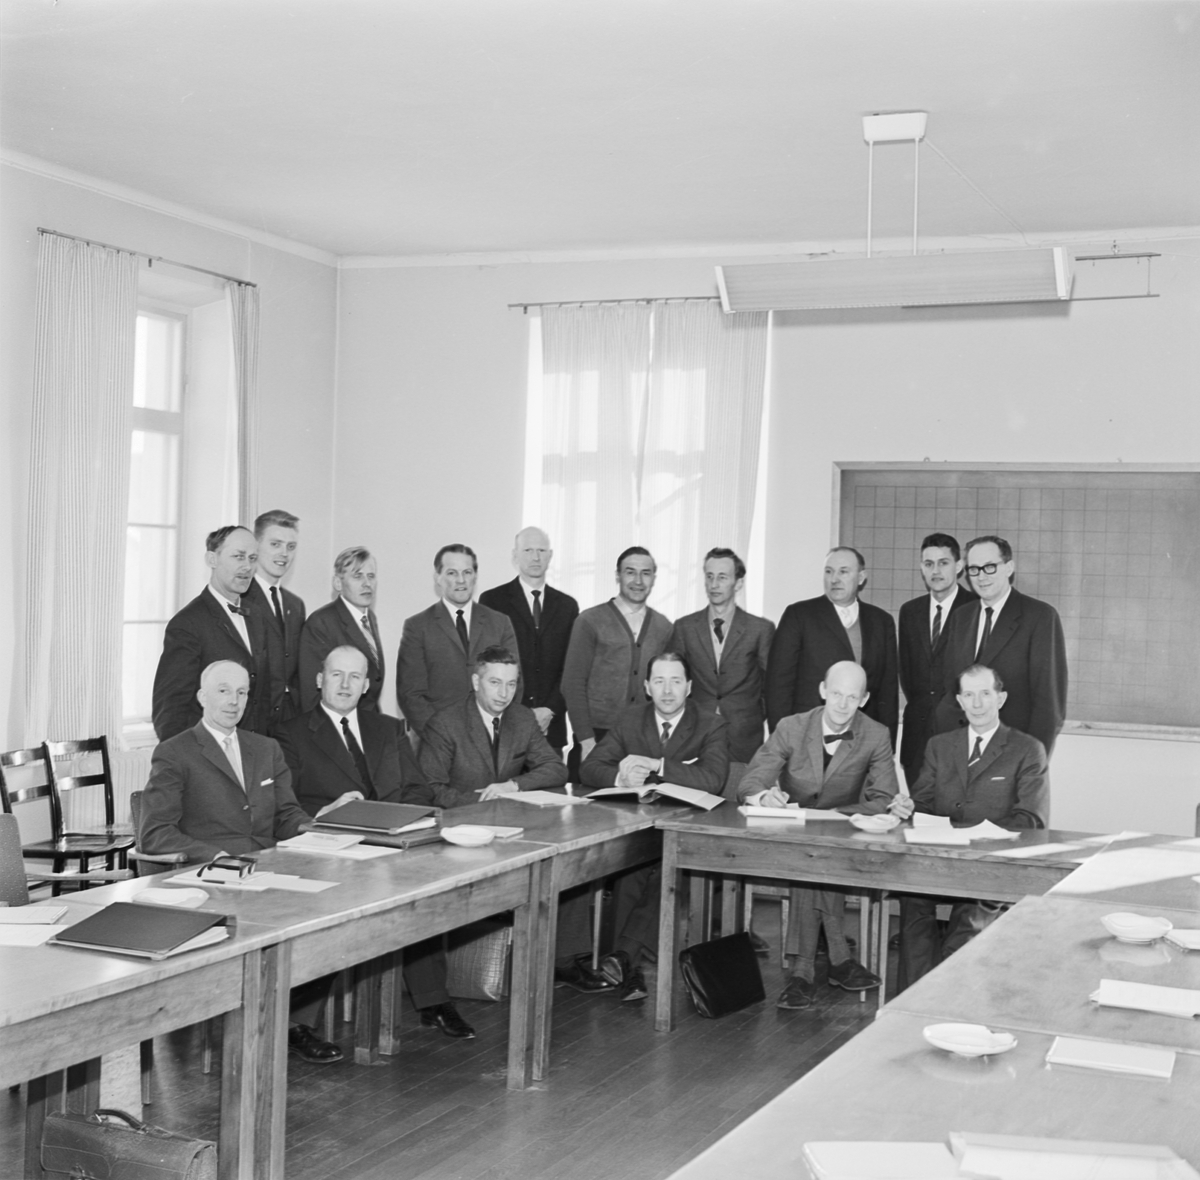 Lantbrukshögskolan, "forskning och praktik studerar hand i hand specialiserat jordbruk", Uppsala 1963